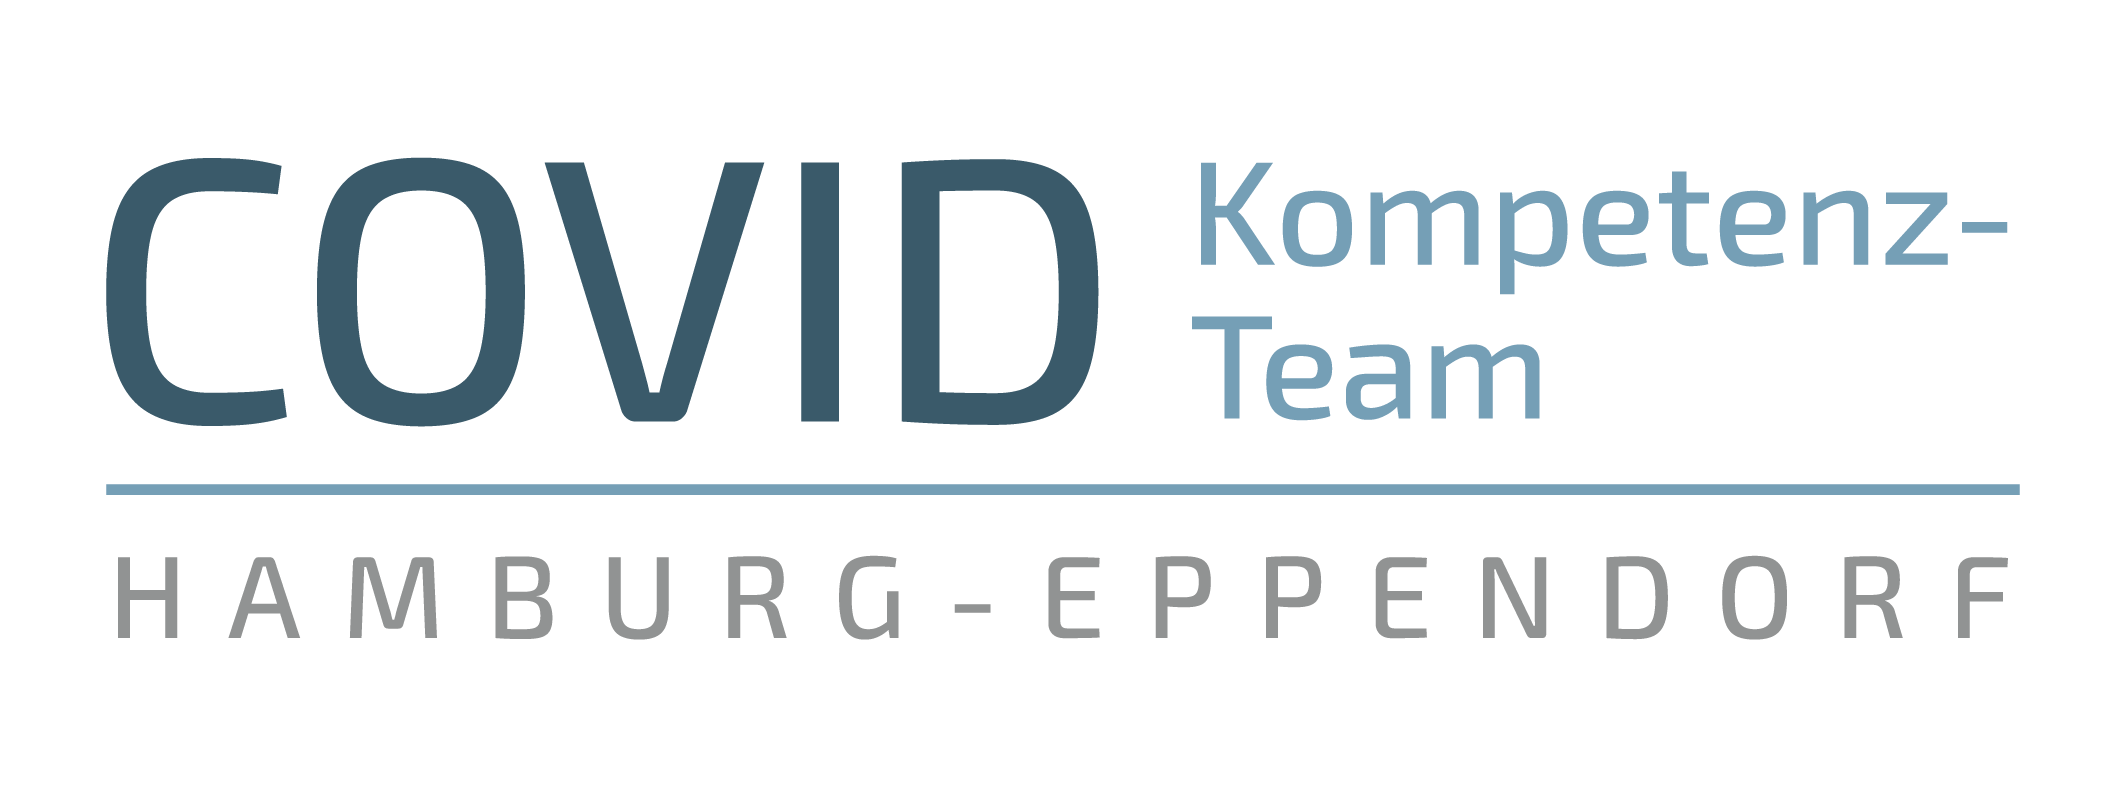 Covid-Kompetenz-Team Hamburg-Eppendorf